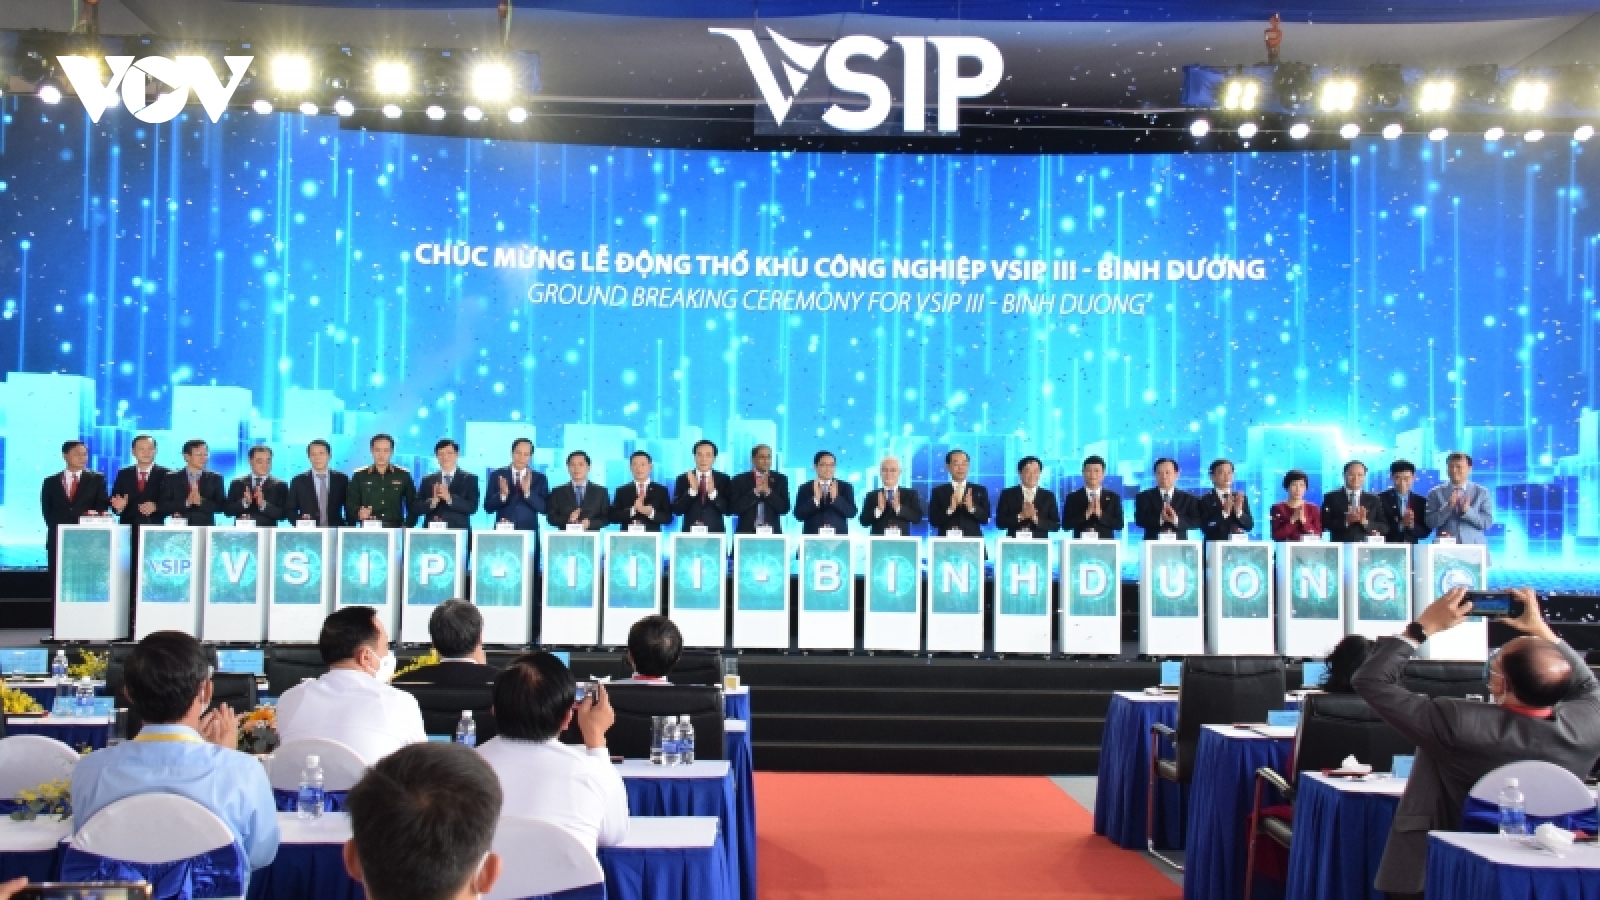 Thủ tướng dự lễ khởi công dự án khu công nghiệp Việt Nam - Singapore III